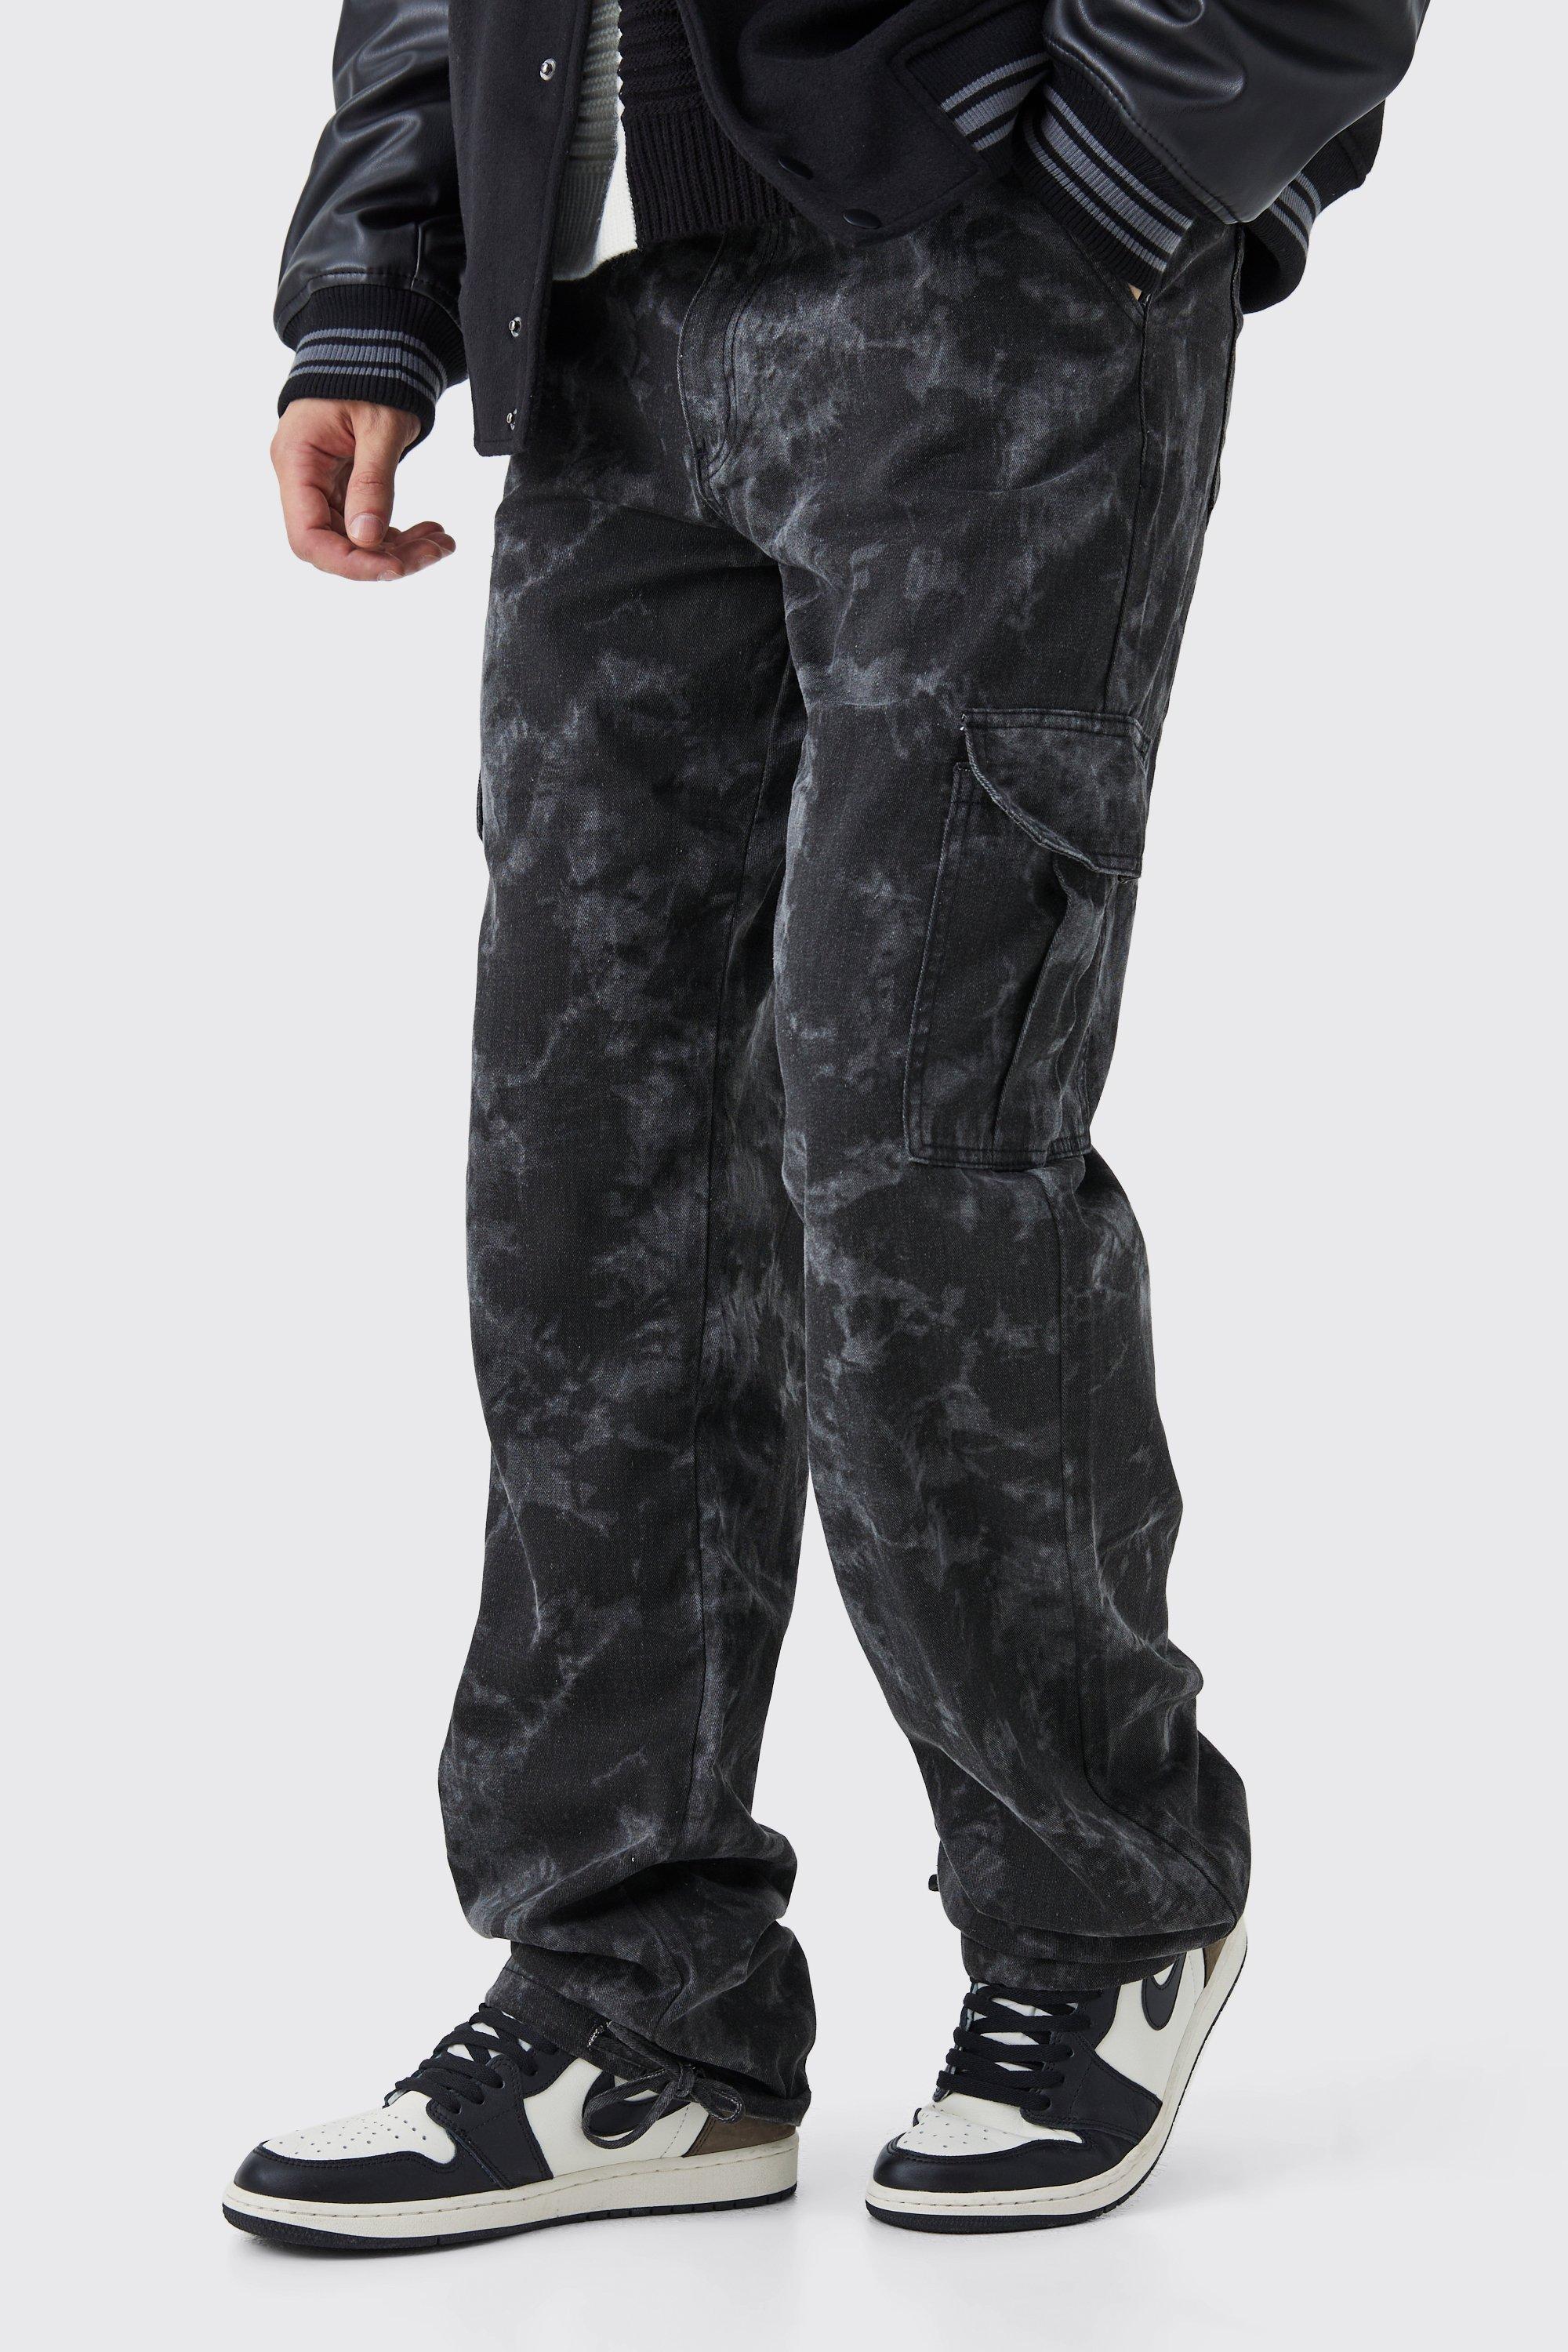 tall - pantalon cargo délavé homme - gris - 30, gris